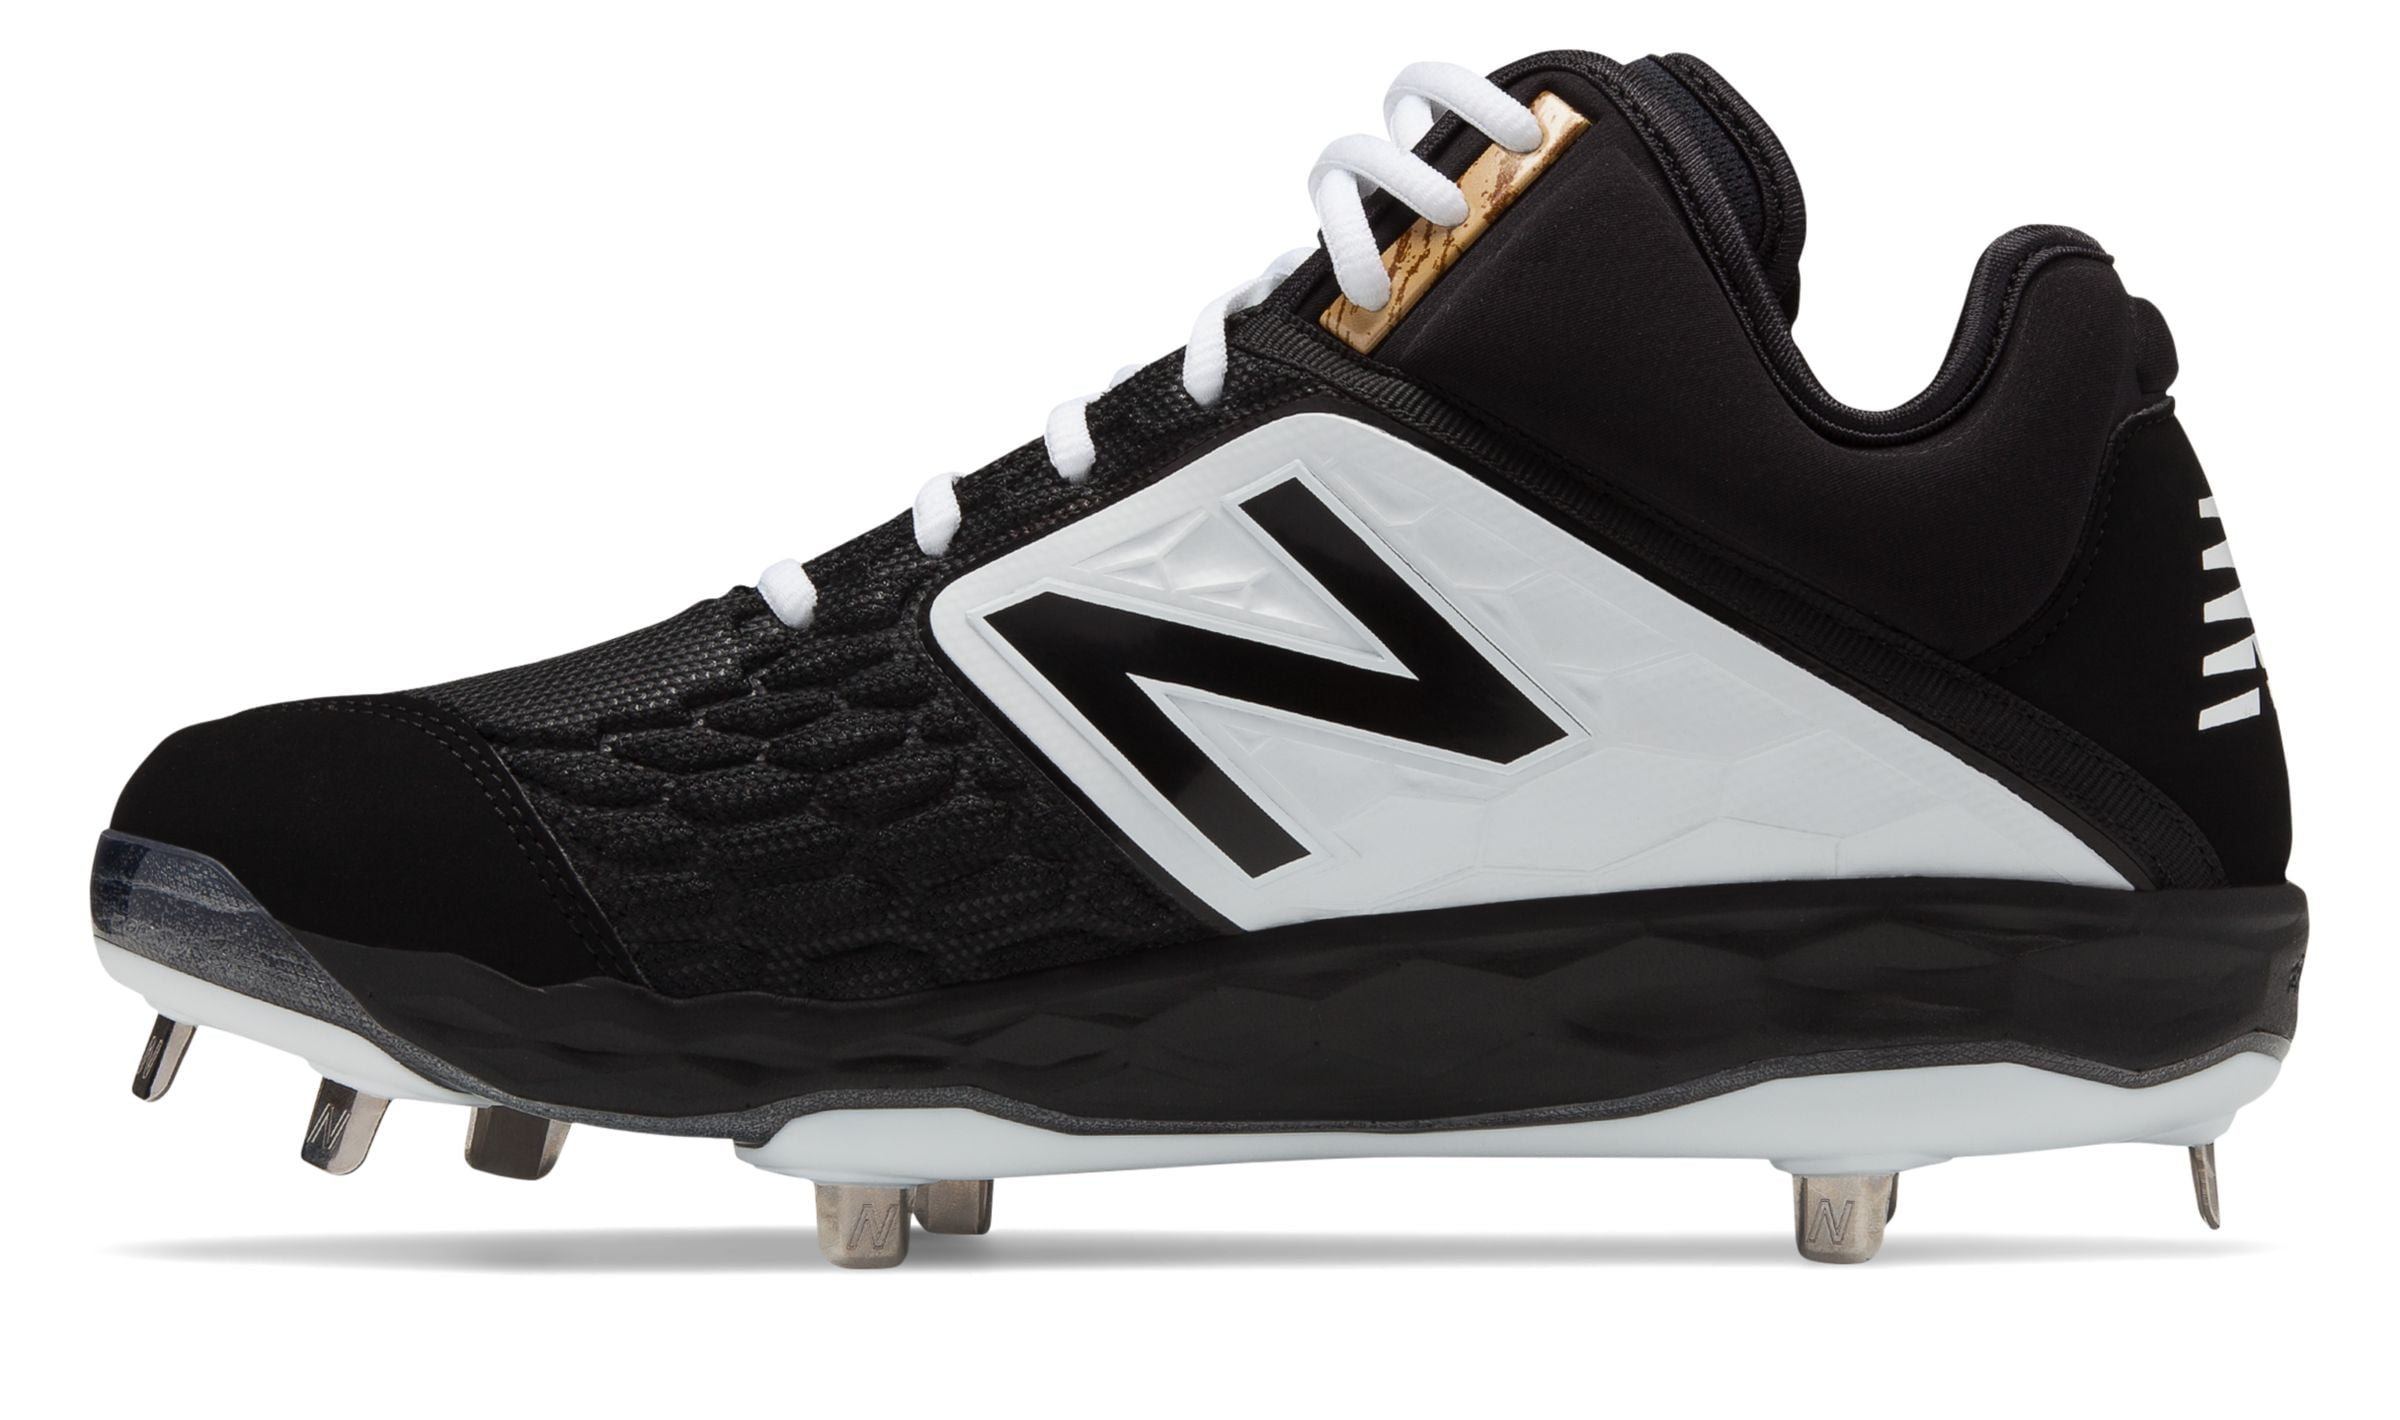 New Balance Men's 3000 V4 Metal Mid-Cut Baseball Shoe, Black/White, Size 5.5